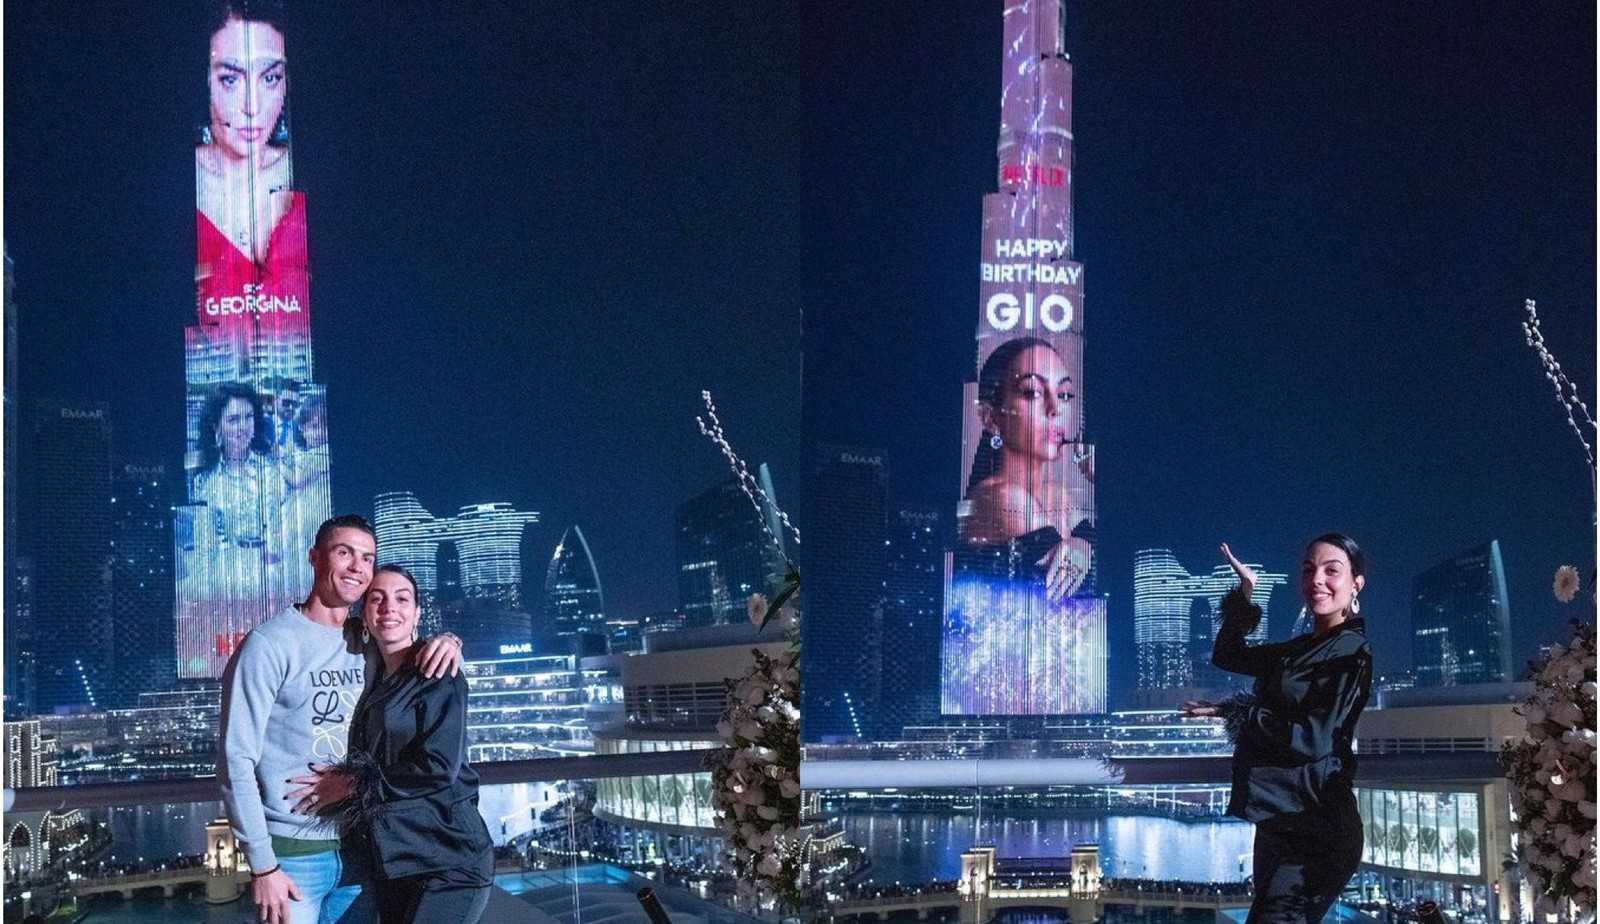 Cristiano Ronaldo surpreende namorada projetando fotos no prédio mais alto do mundo